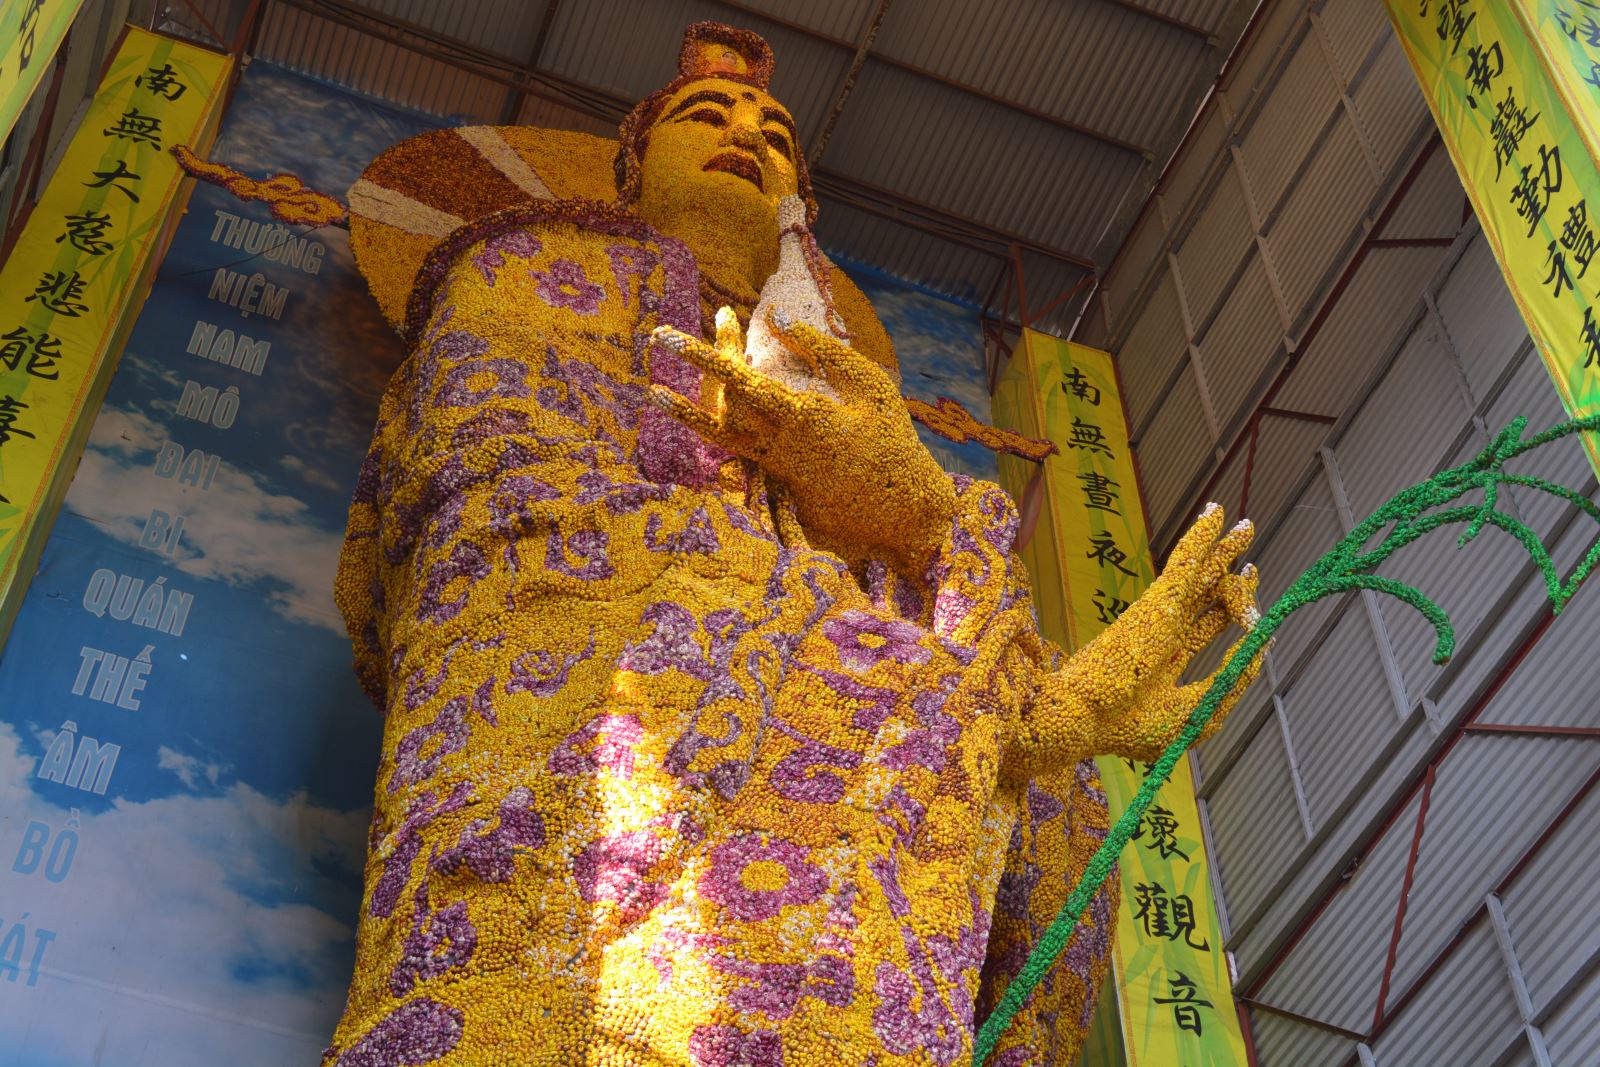 Tượng Phật bằng hoa bất tử của Chùa Linh Phước lập Kỷ lục Thế giới - HỘI KỶ LỤC GIA VIỆT NAM - TỔ CHỨC KỶ LỤC VIỆT NAM(VIETKINGS)